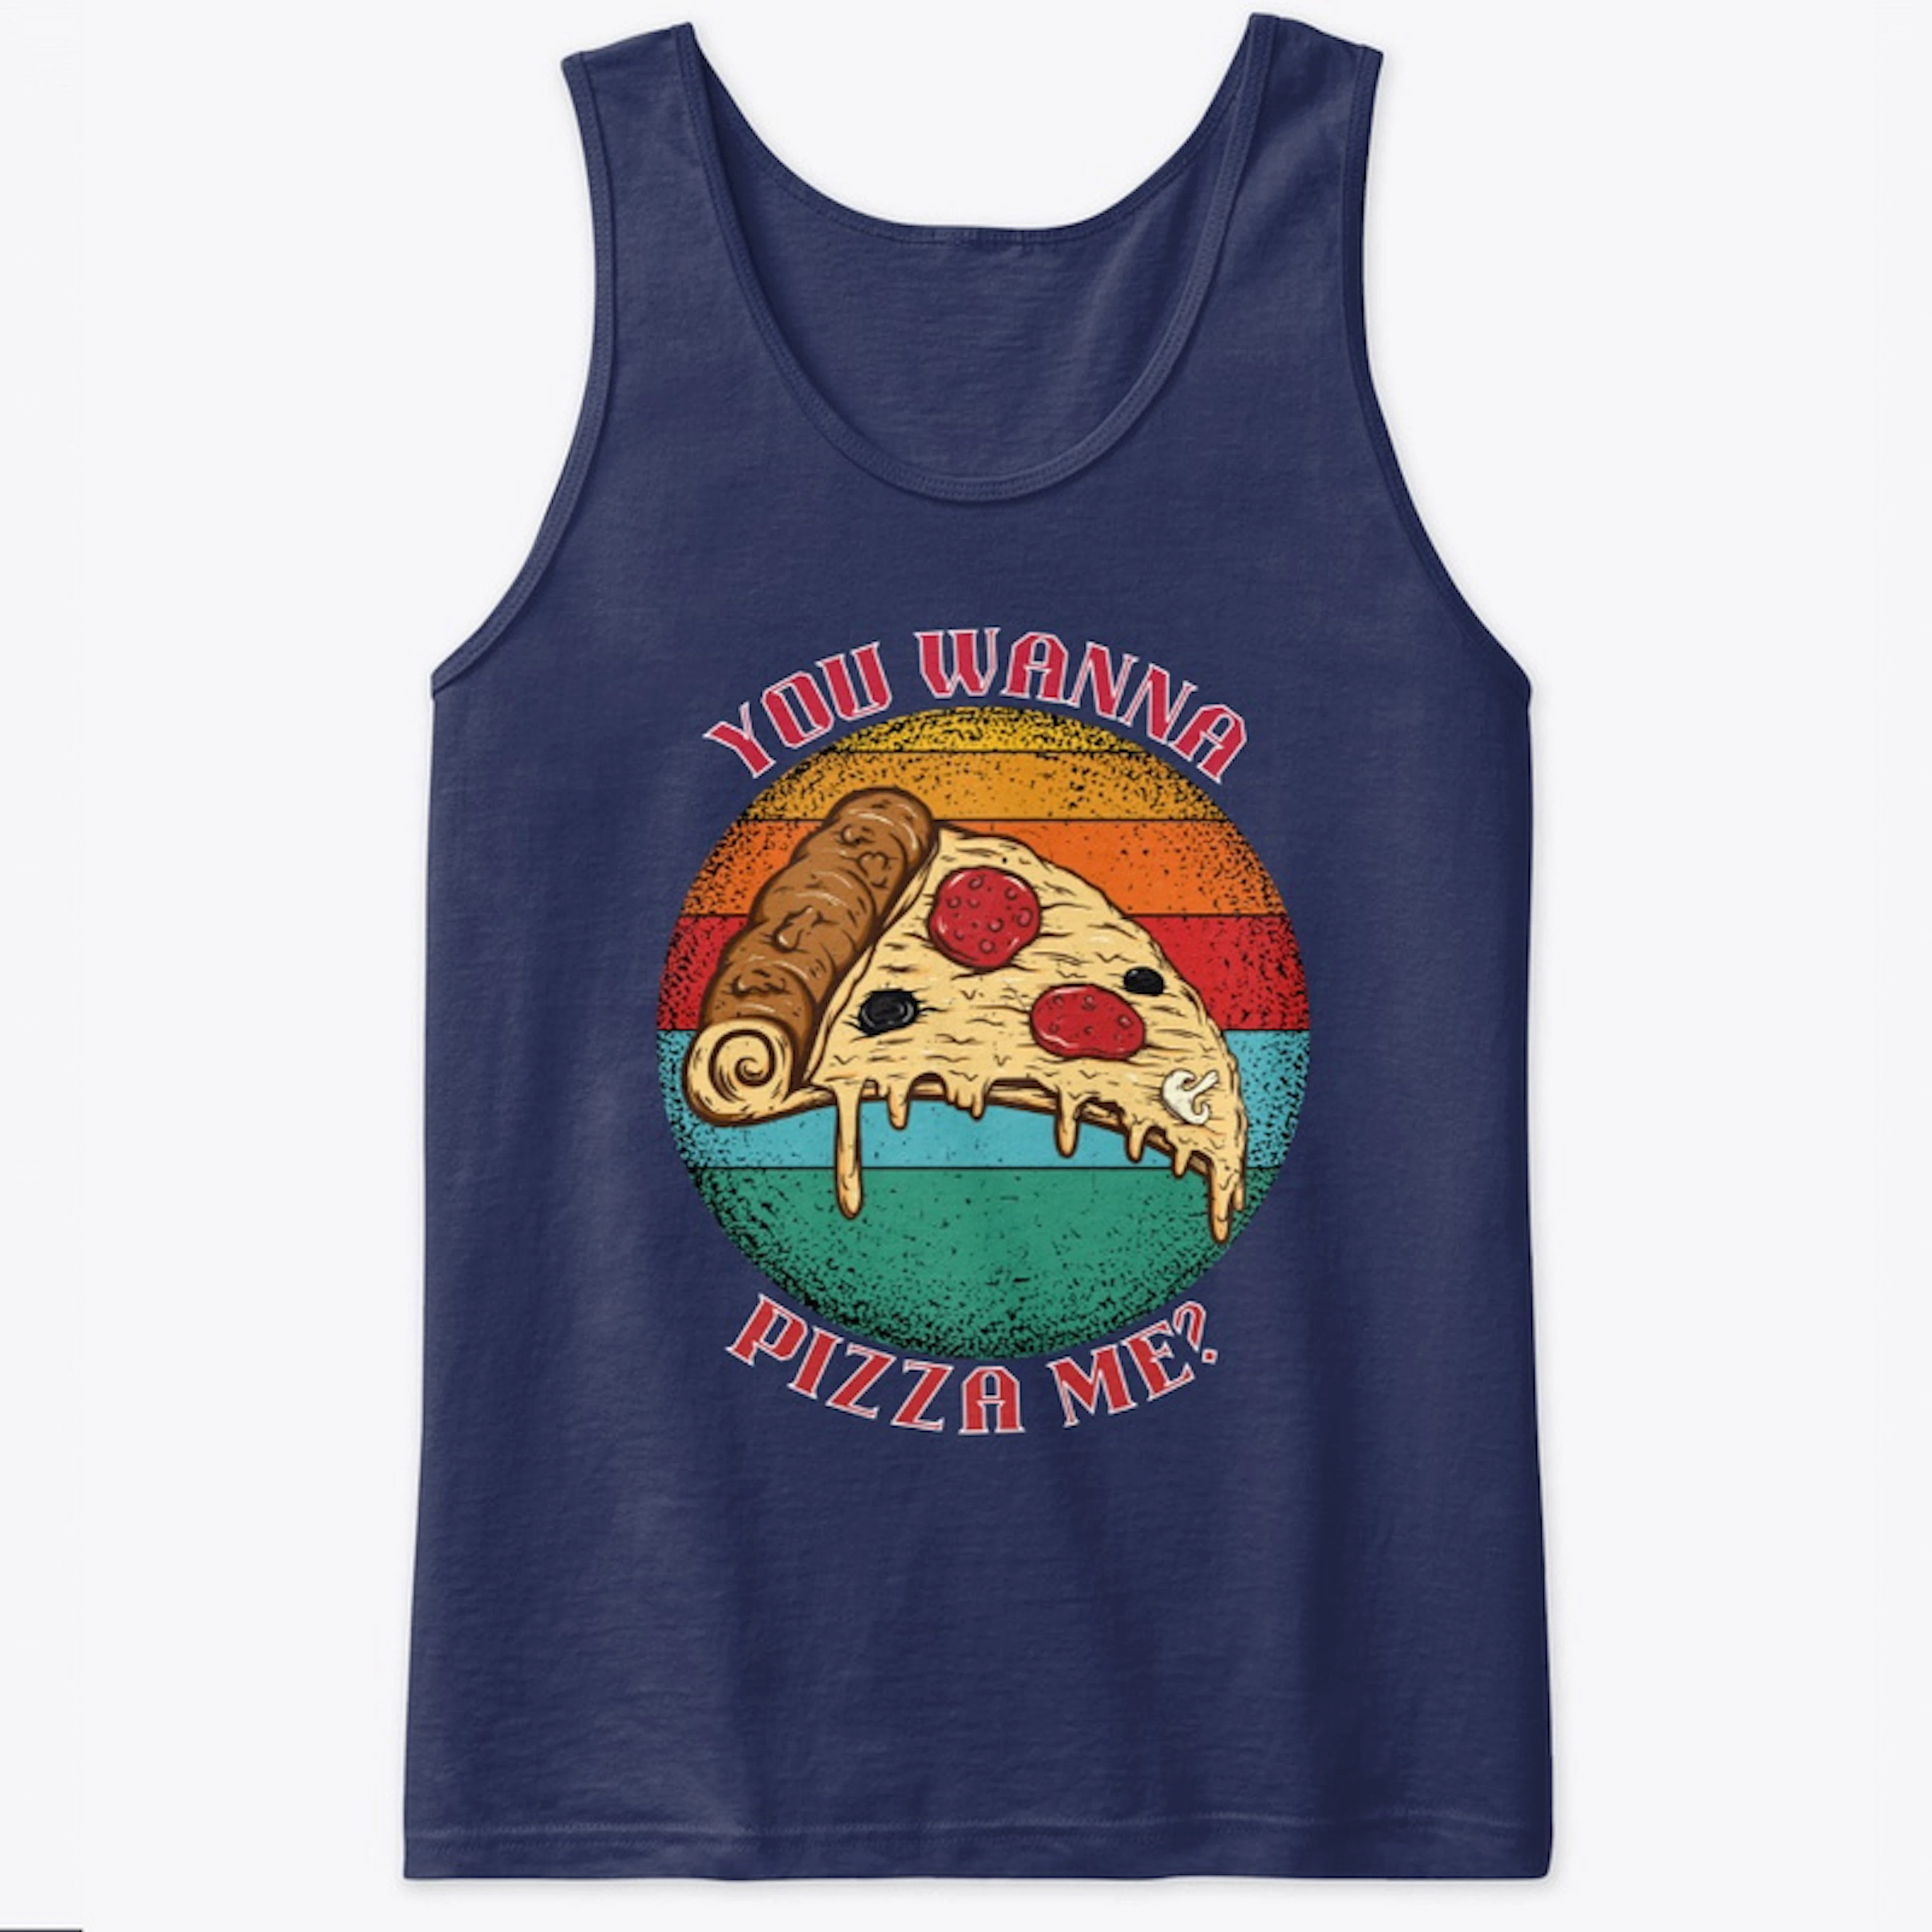 Wanna Pizza Me Retro Shirt